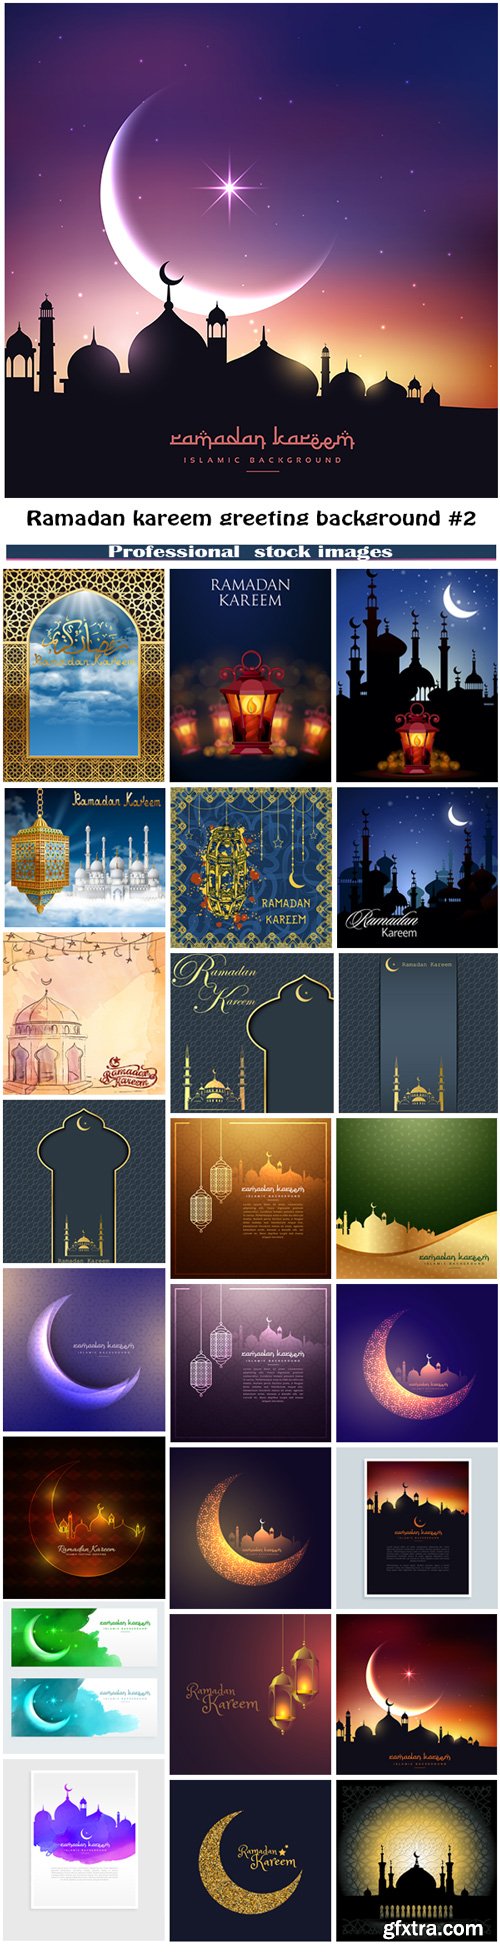 Ramadan kareem greeting background #2